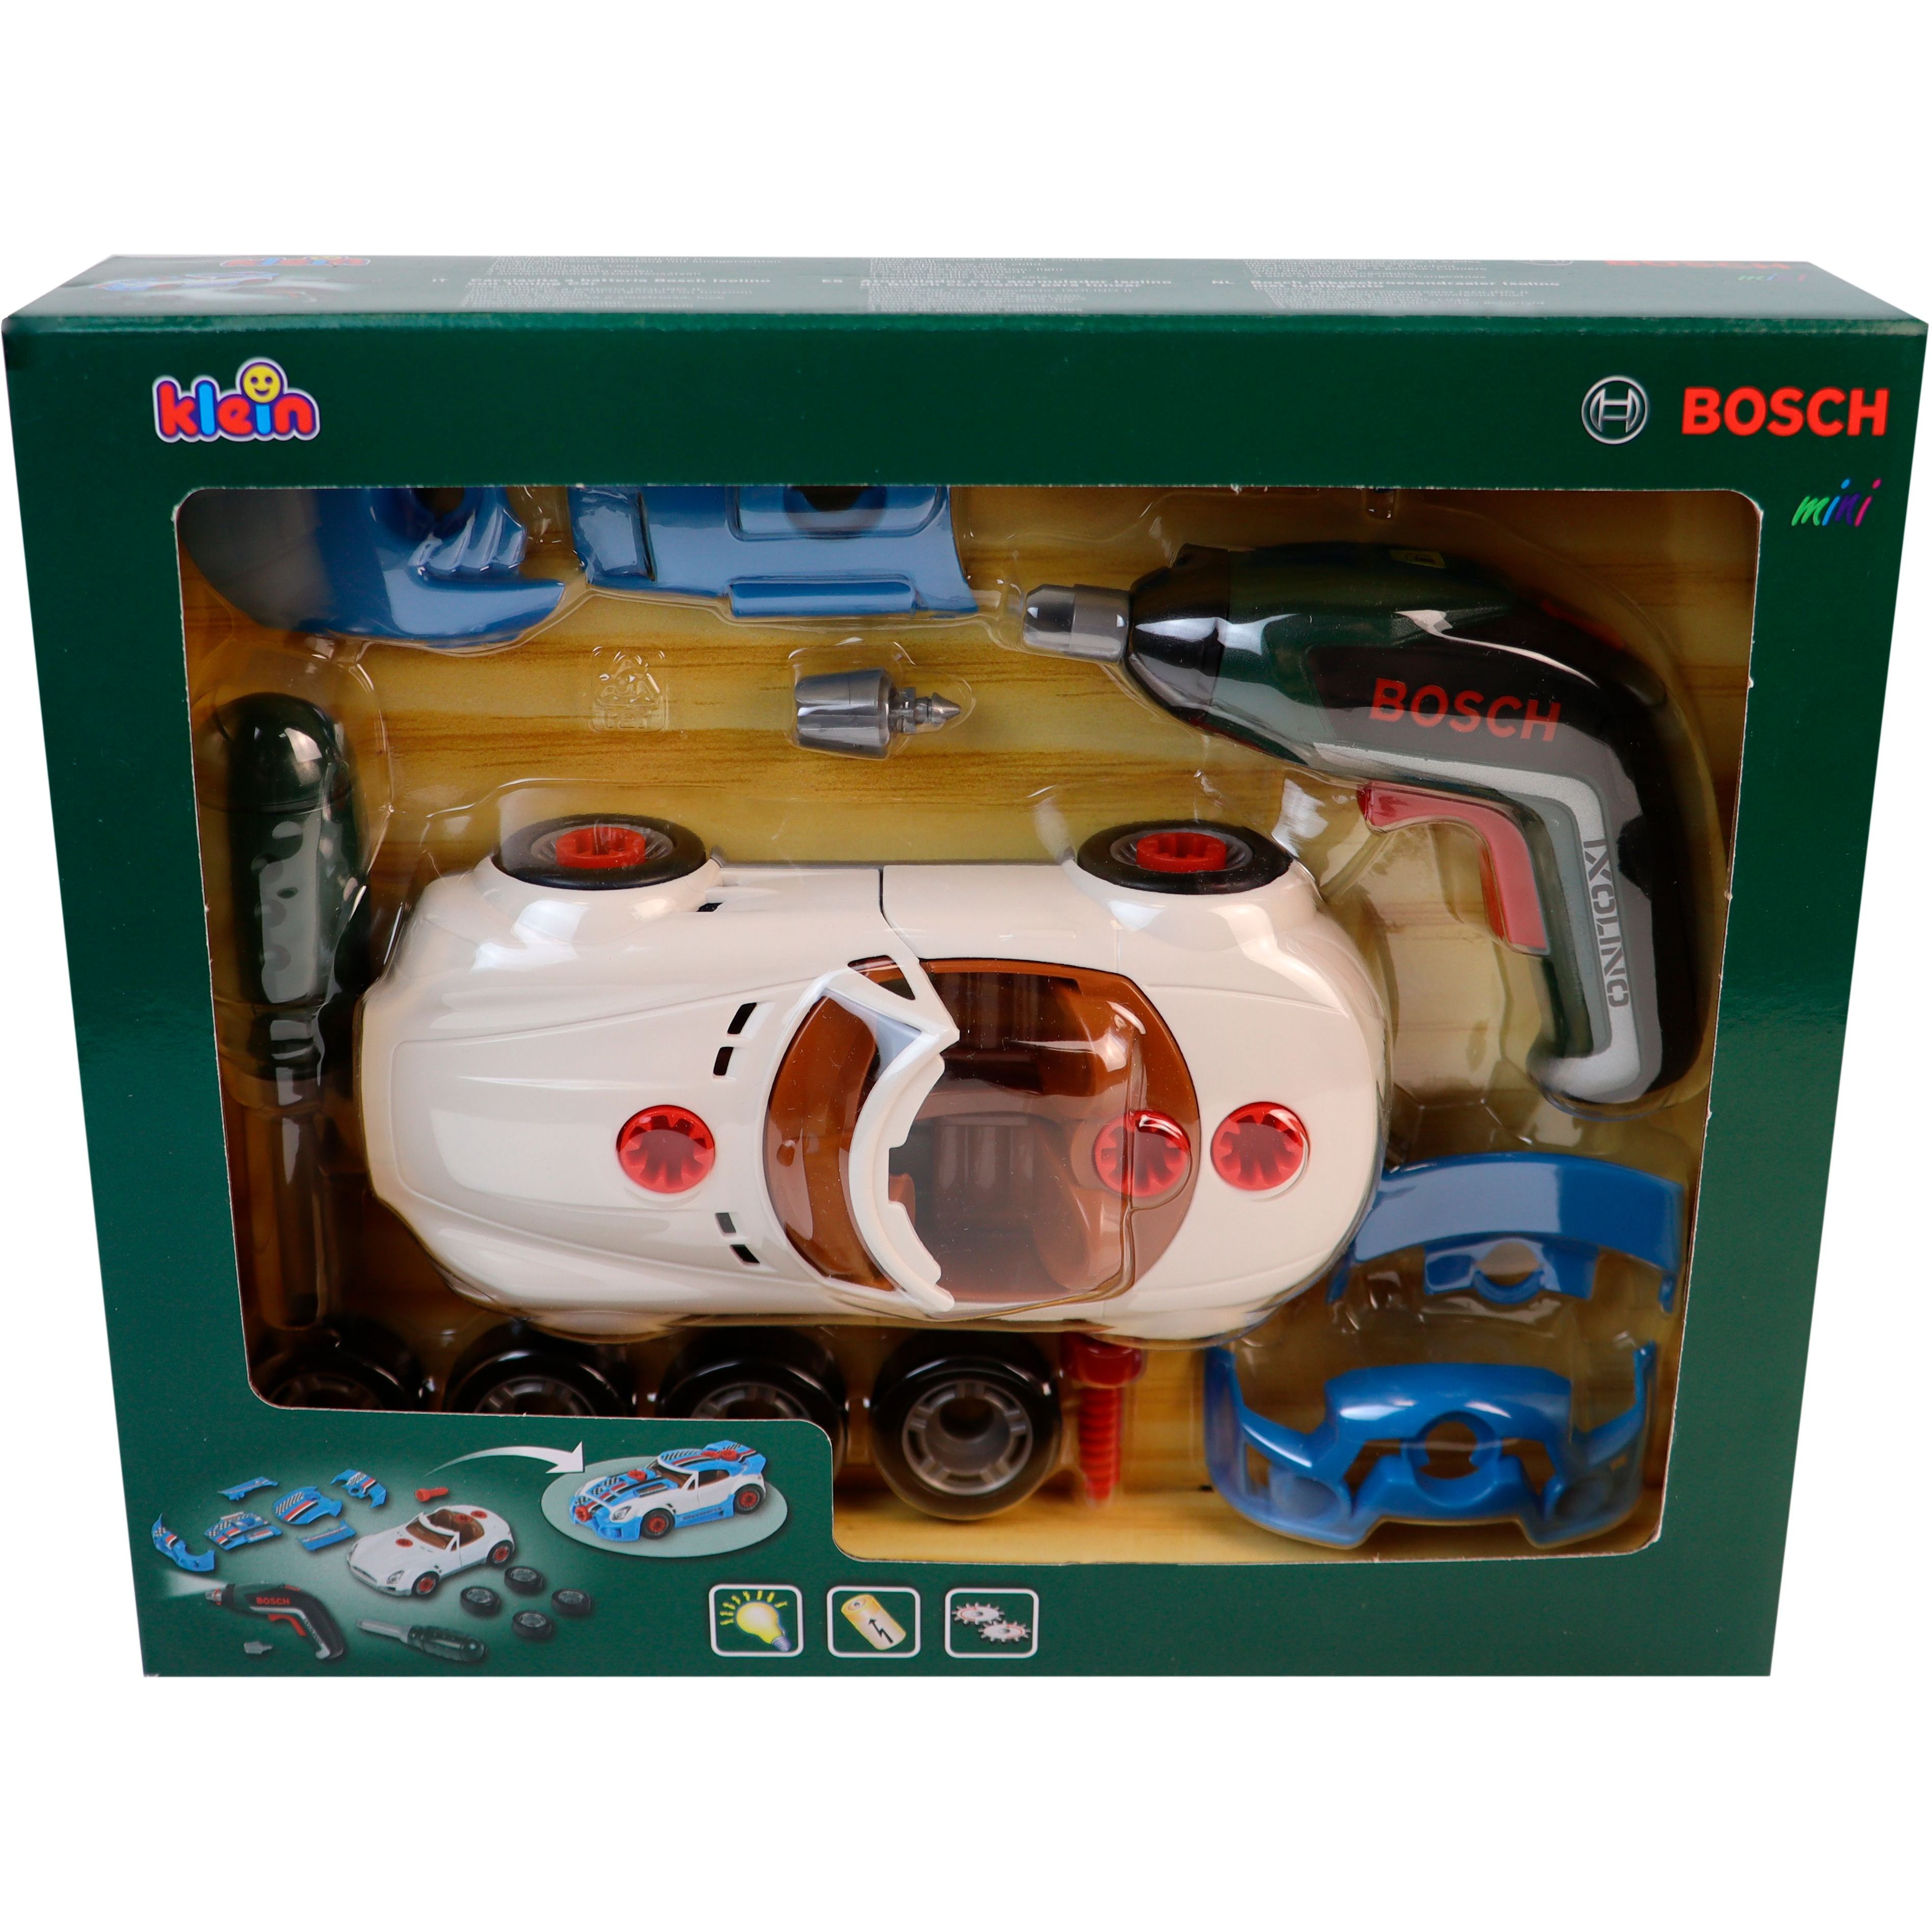 Іграшковий набір Bosch Mini для тюнінгу автомобіля Ixolino II (8630) - фото 2